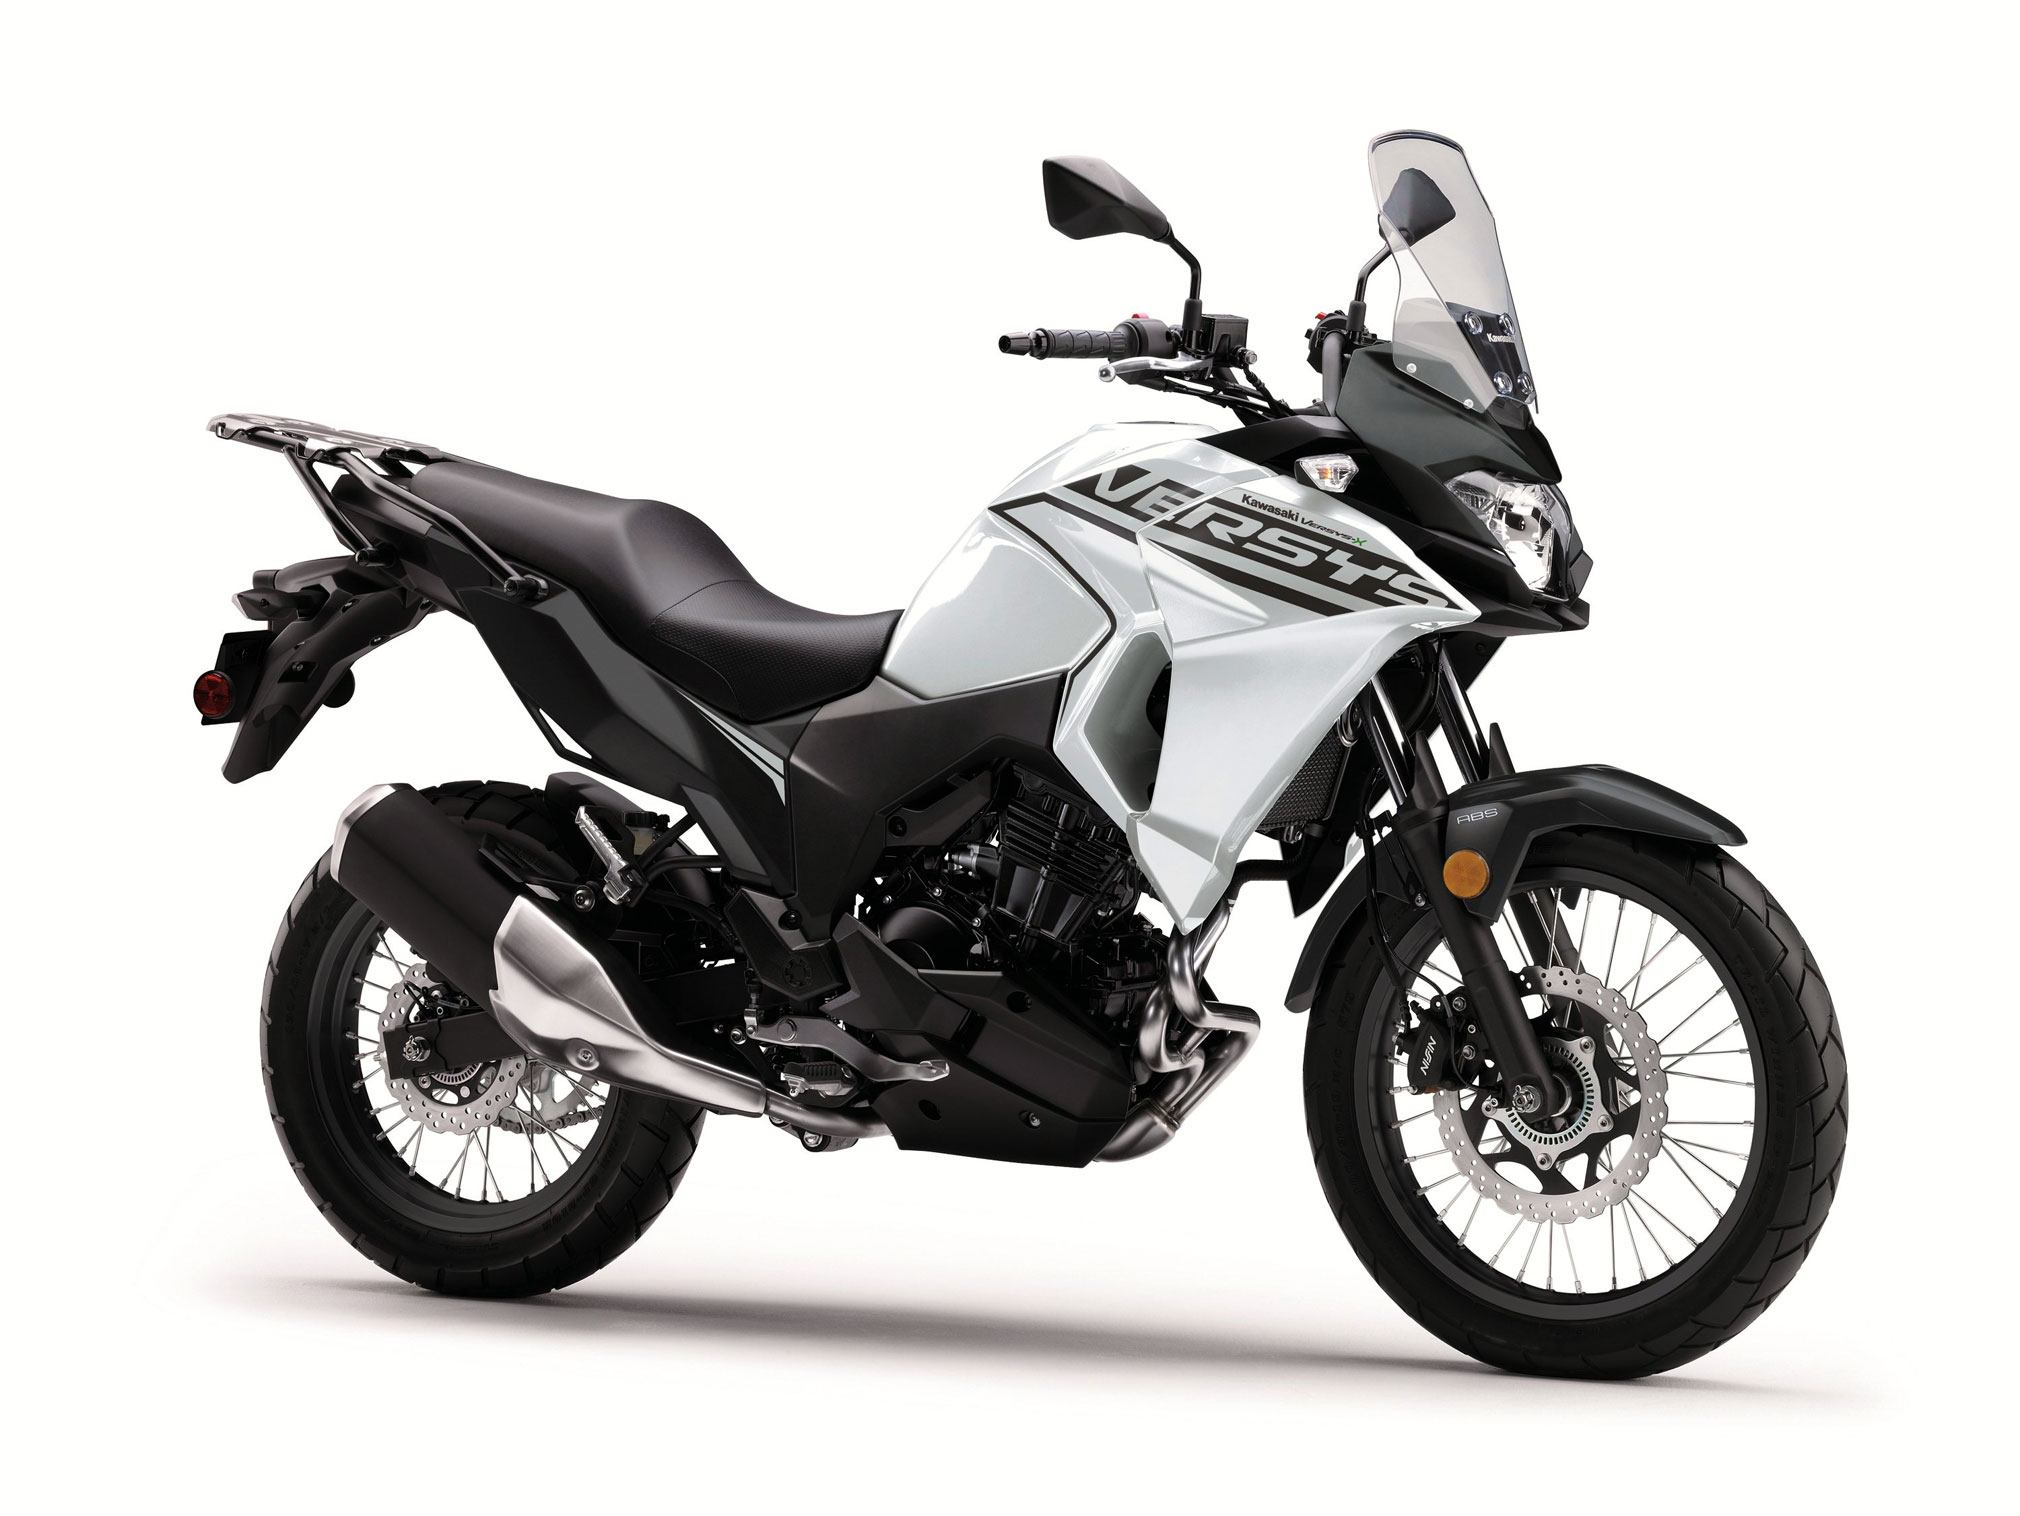 2020 Kawasaki Versys-X 300 Guide • Total Motorcycle